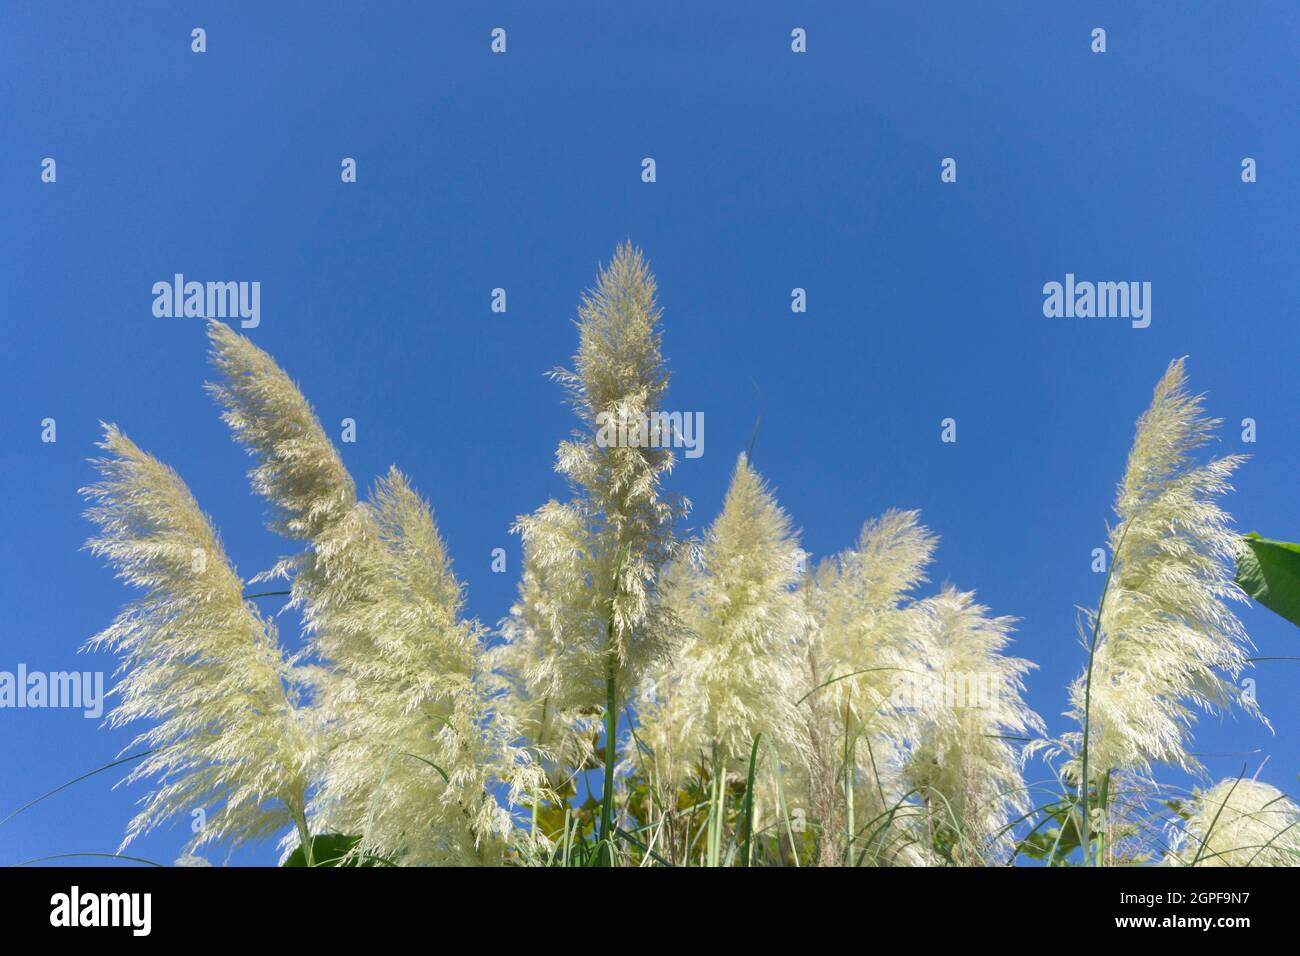 Pampas grass under a bright blue summer sky Stock Photo